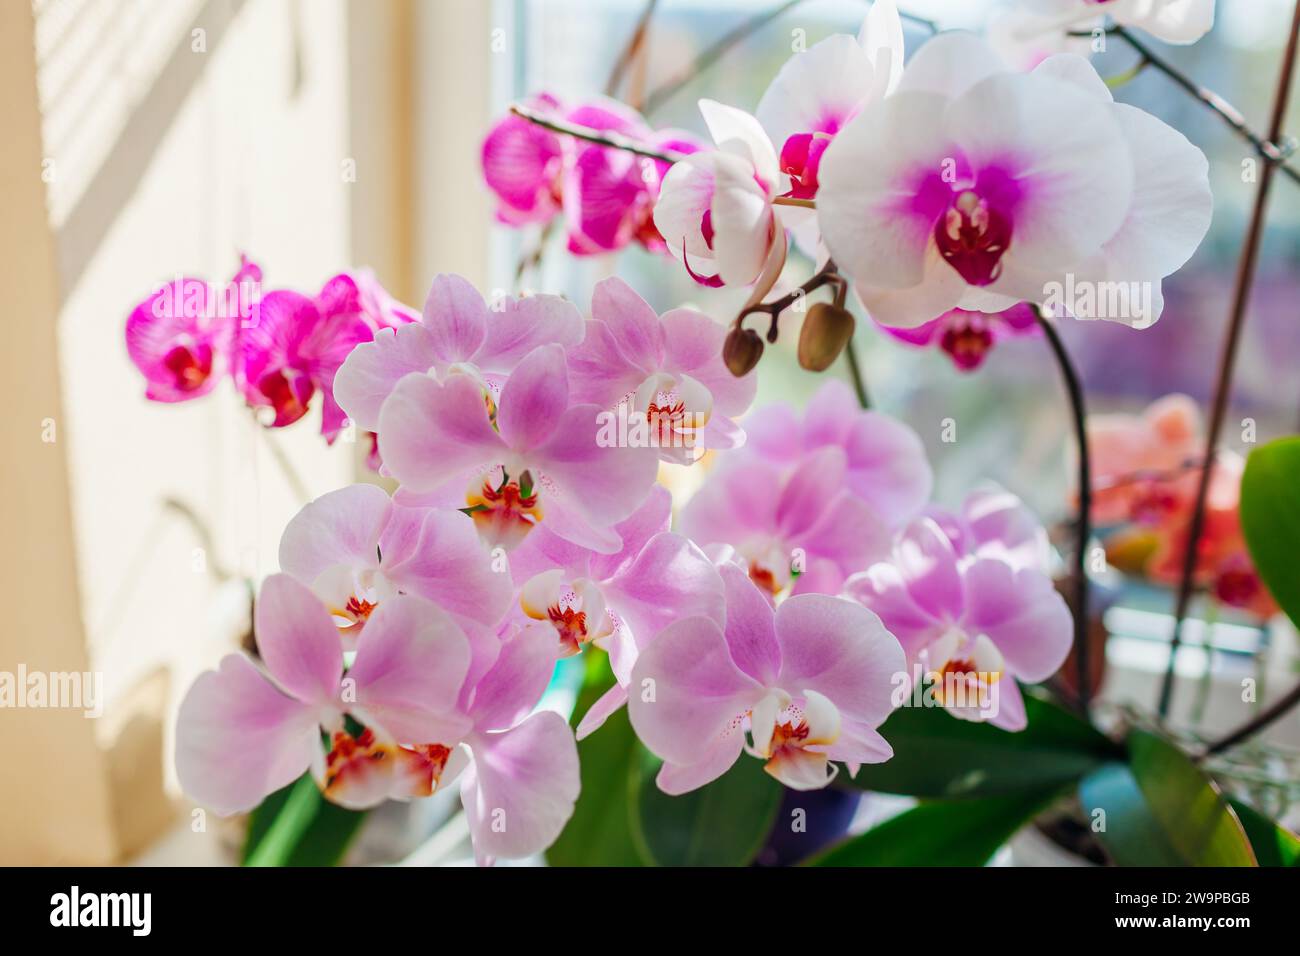 Fioritura delle orchidee phalaenopsis. Fiori bianchi, viola e rosa fioriscono sul davanzale. Primo piano su una varietà di piante domestiche Foto Stock